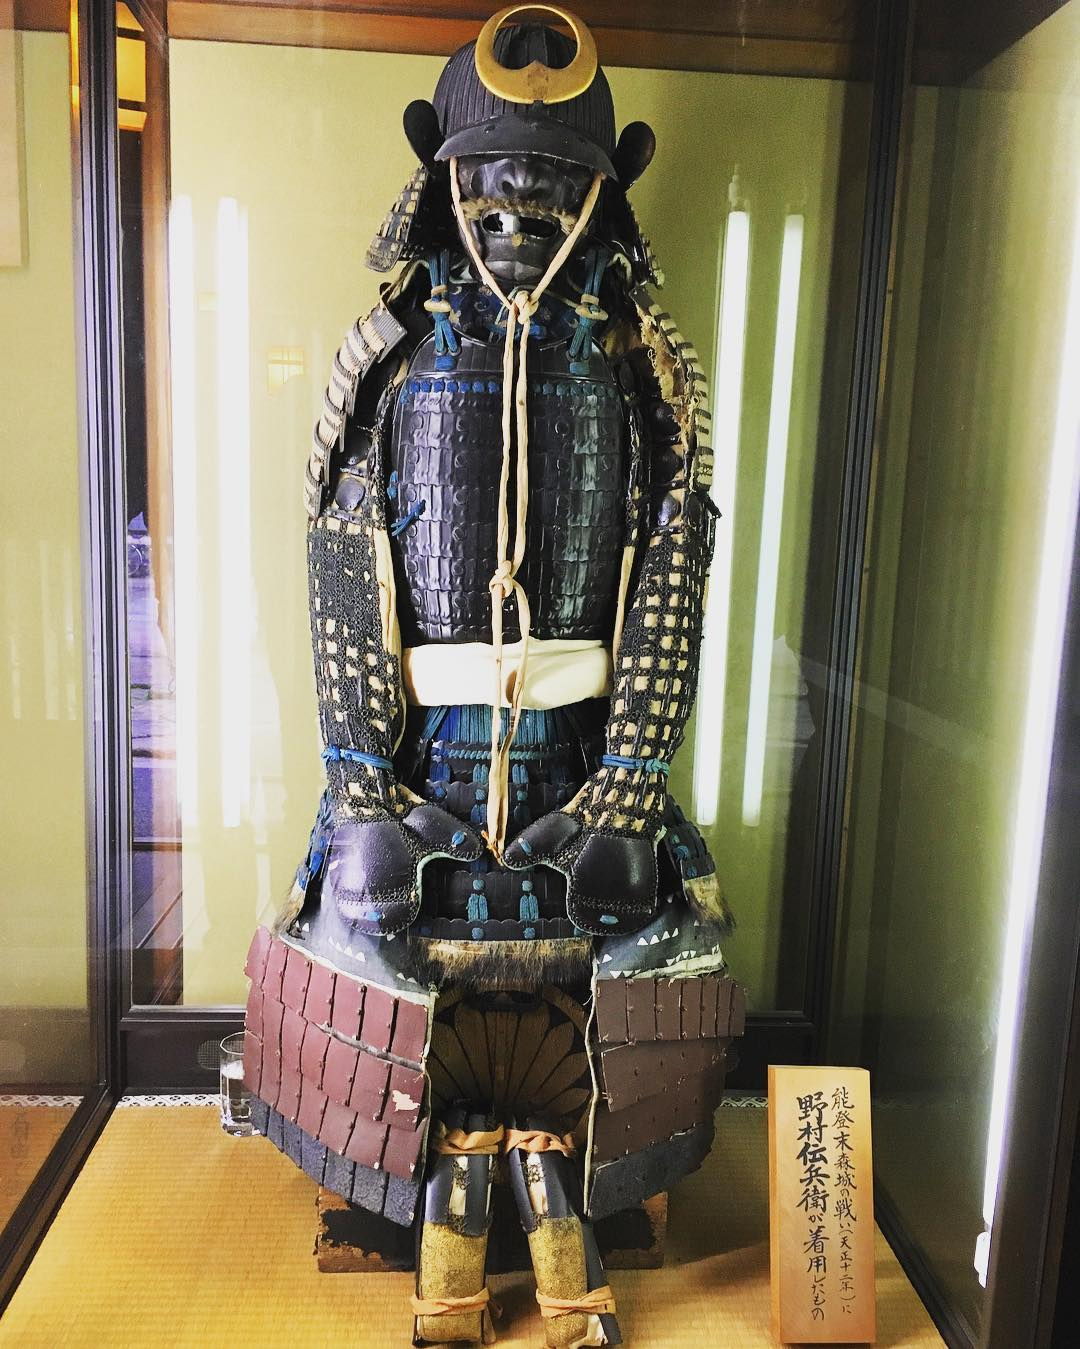 Samurai sculpture in Nomura Family Samurai Home.